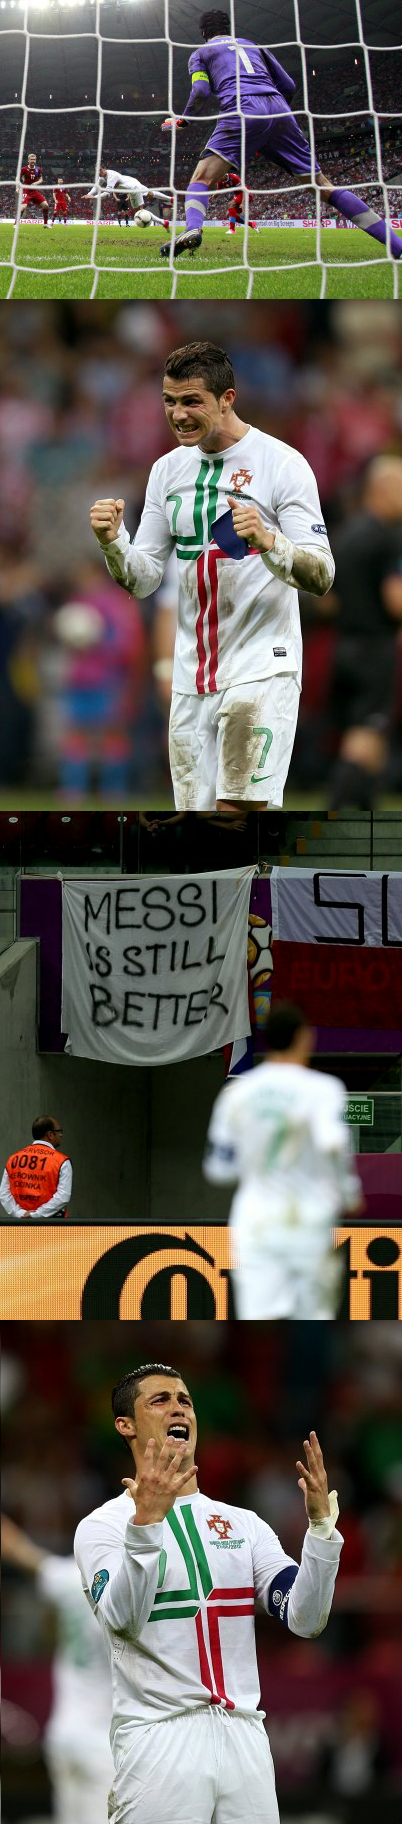 IMAGINEA ZILEI! Ronaldo nu scapa de COSMARUL Messi! Ce banner i-a stricat bucuria calificarii in semifinale:_2